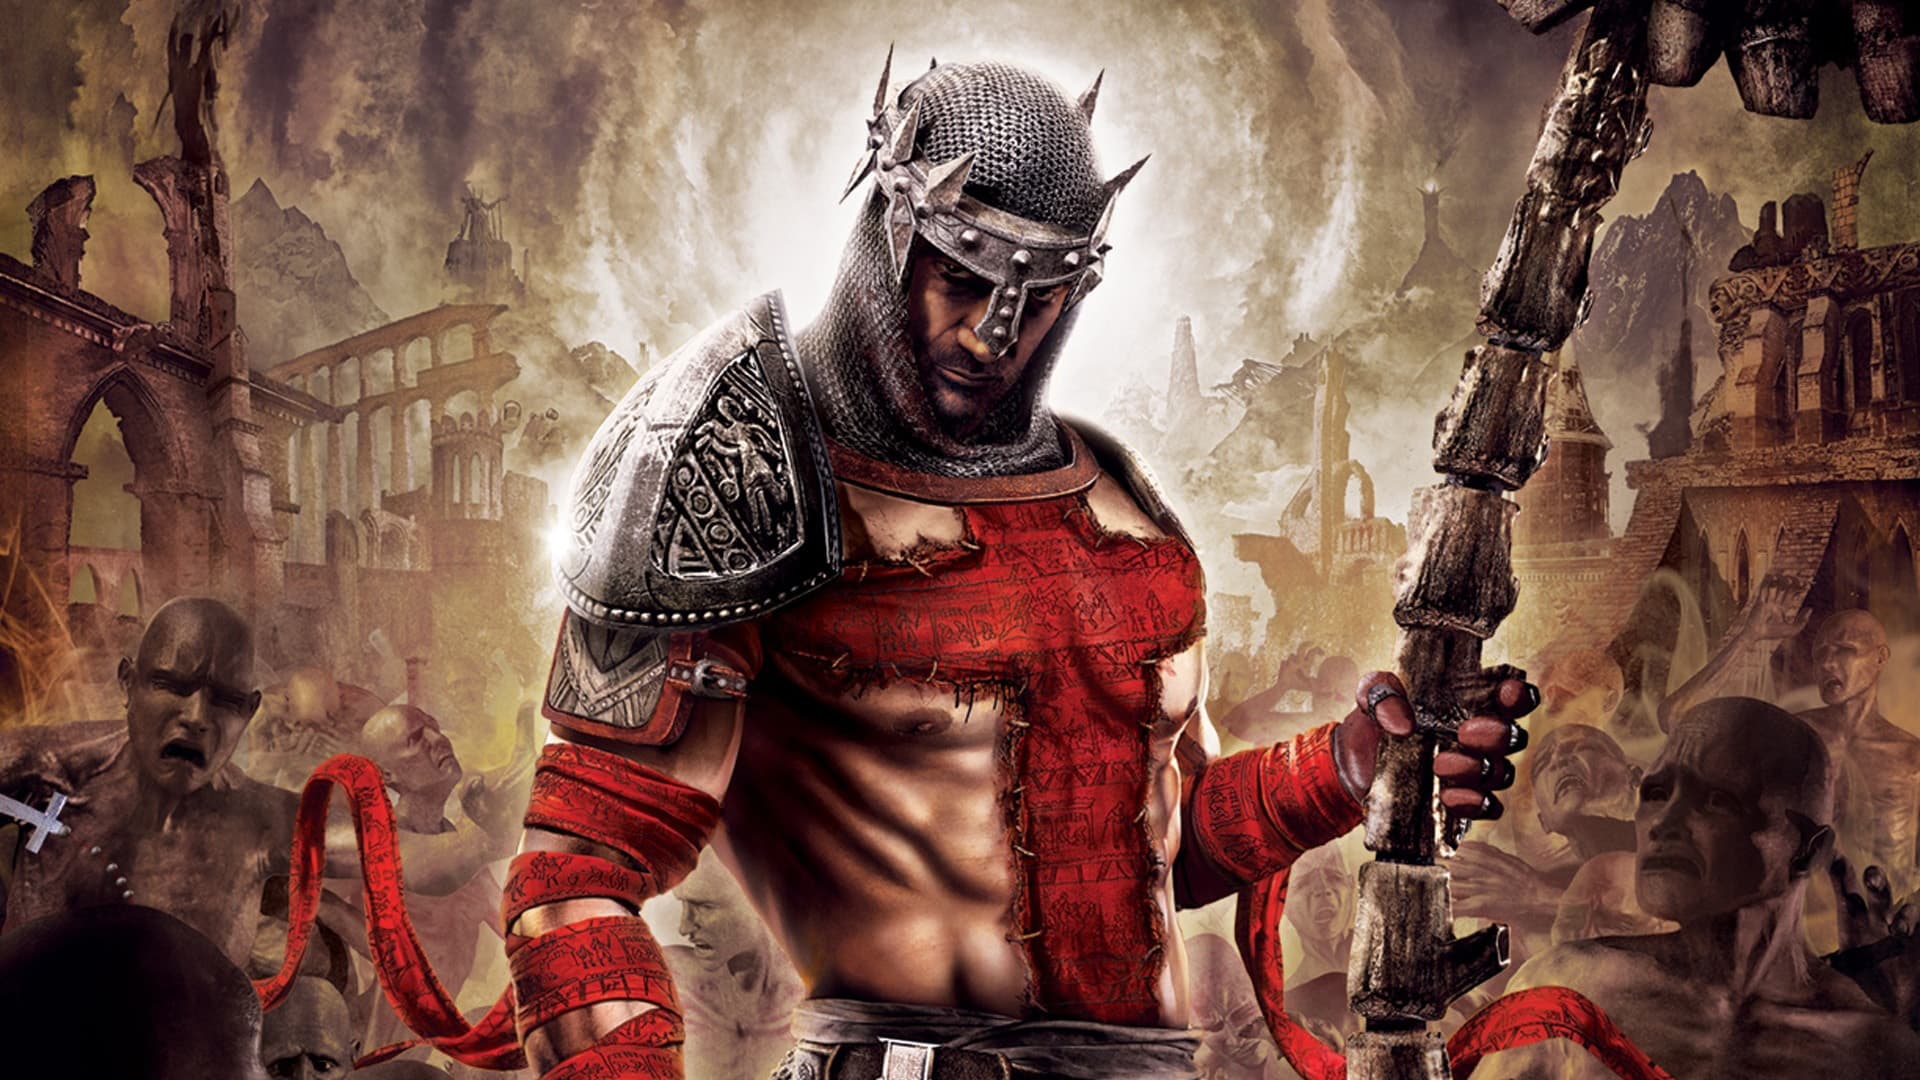 Electronic Arts cerrará los servidores de Dante’s Inferno, Dead Space 2 y Crysis 3 | SomosXbox